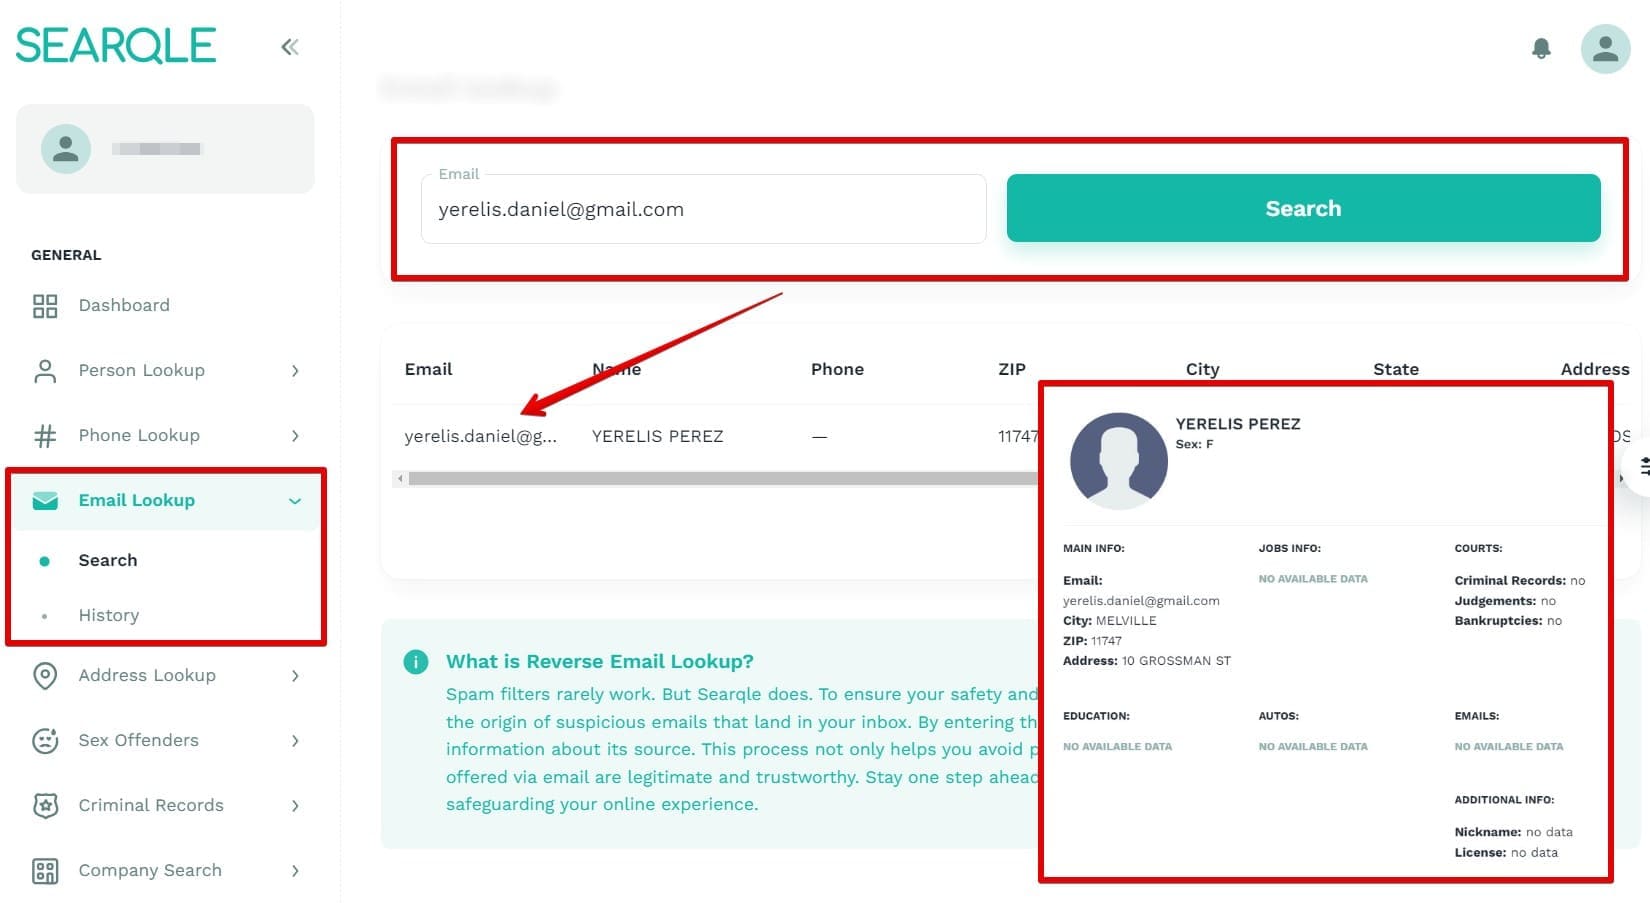 Imagem mostrando como encontrar uma pessoa por endereço de e-mail no Searqle e quais dados estarão visíveis em uma pesquisa